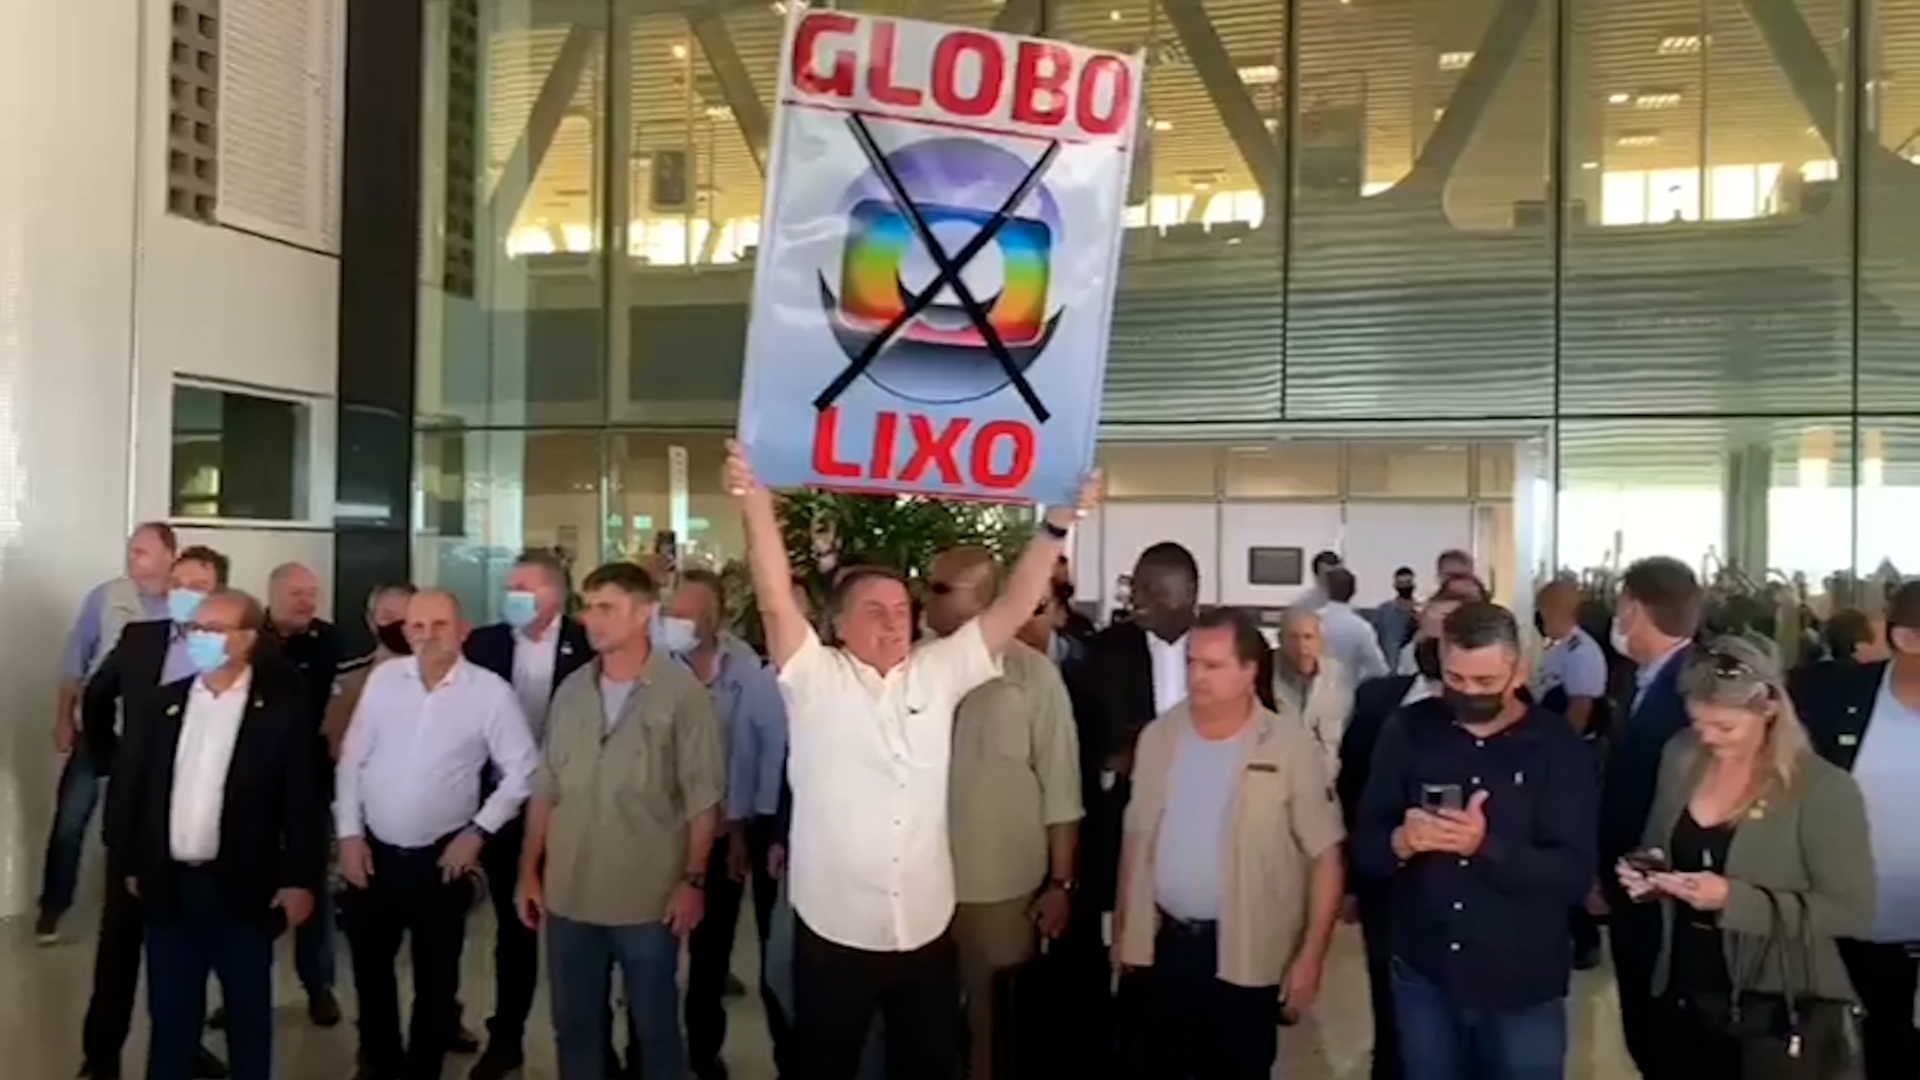 Bolsonaro estendendo cartaz de Globo Lixo em aeroporto